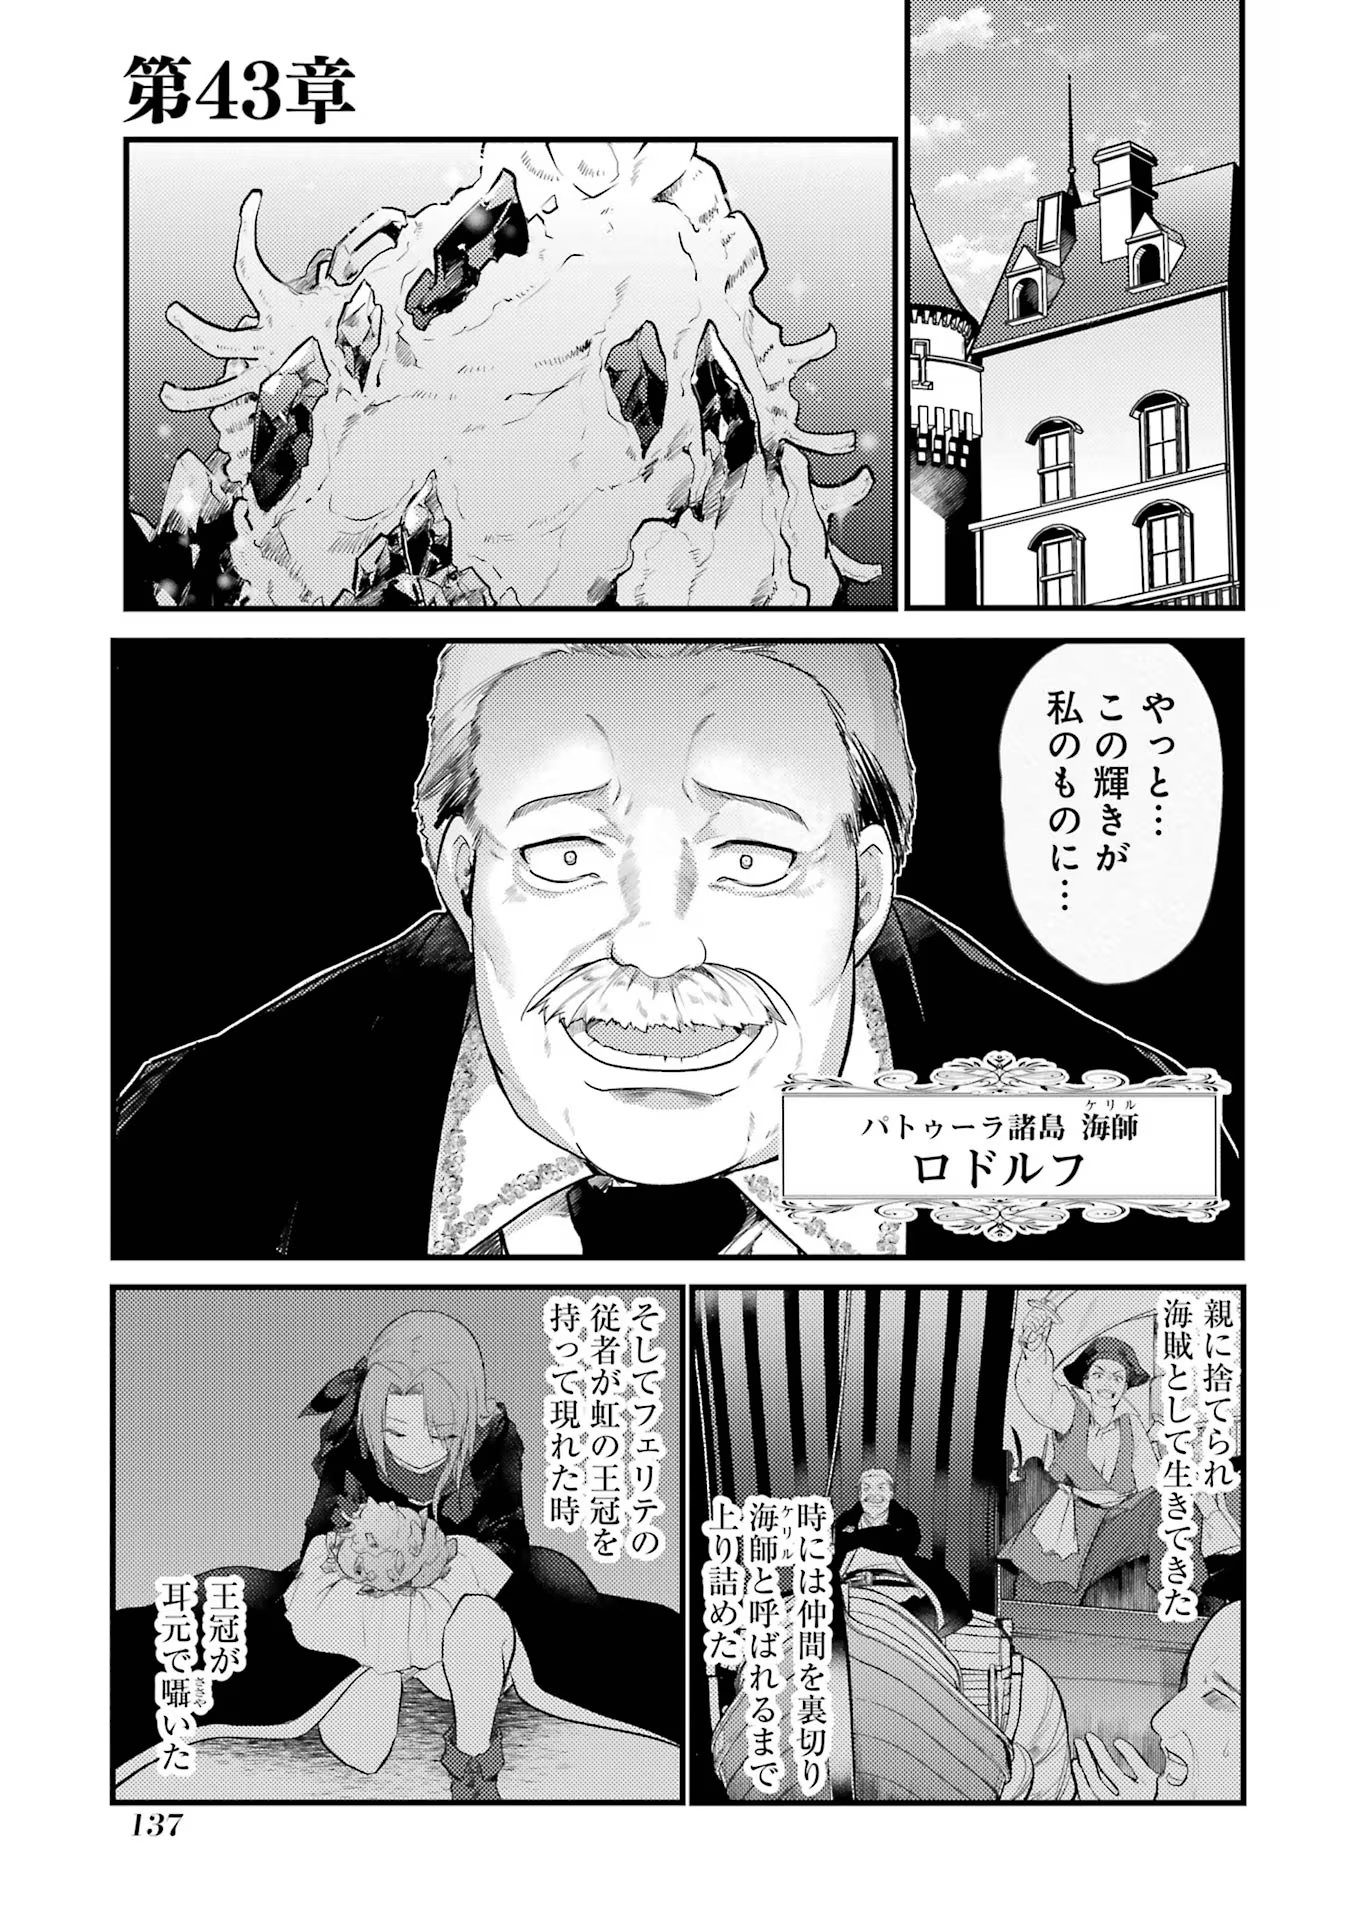 Souda, Baikoku Shiyou: Tensai Ouji no Akaji Kokka Saisei Jutsu - Chapter 43 - Page 1